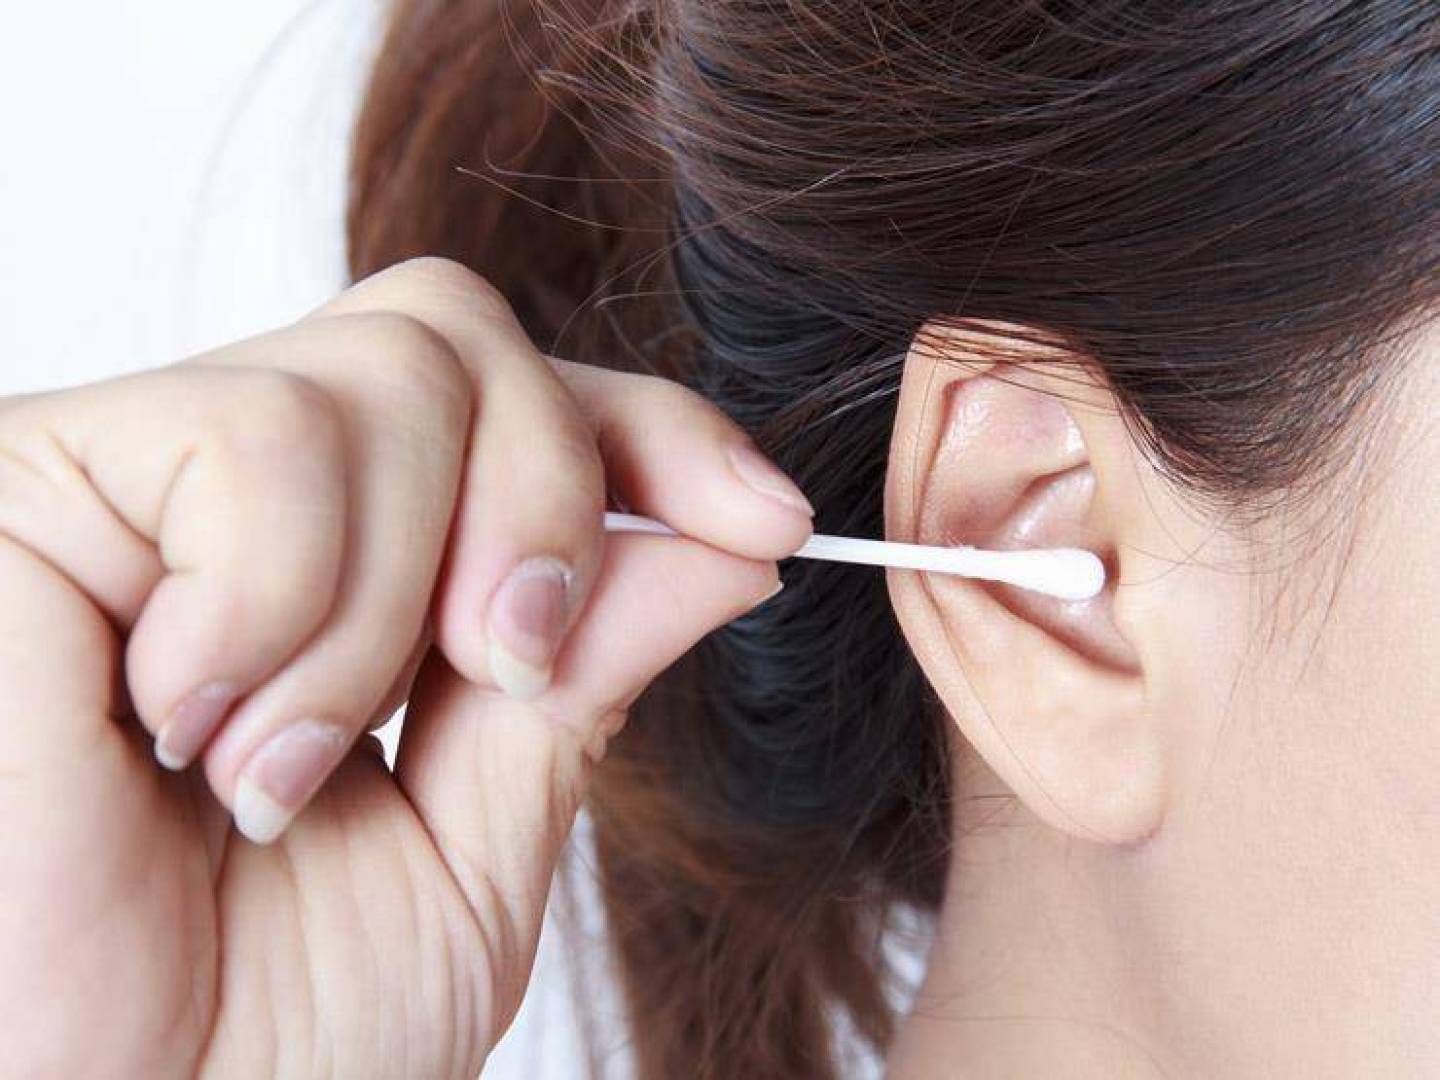 تجنب استخدام العيدان القطنية لتنظيف الأذن من الشمع .. نصائح طبية